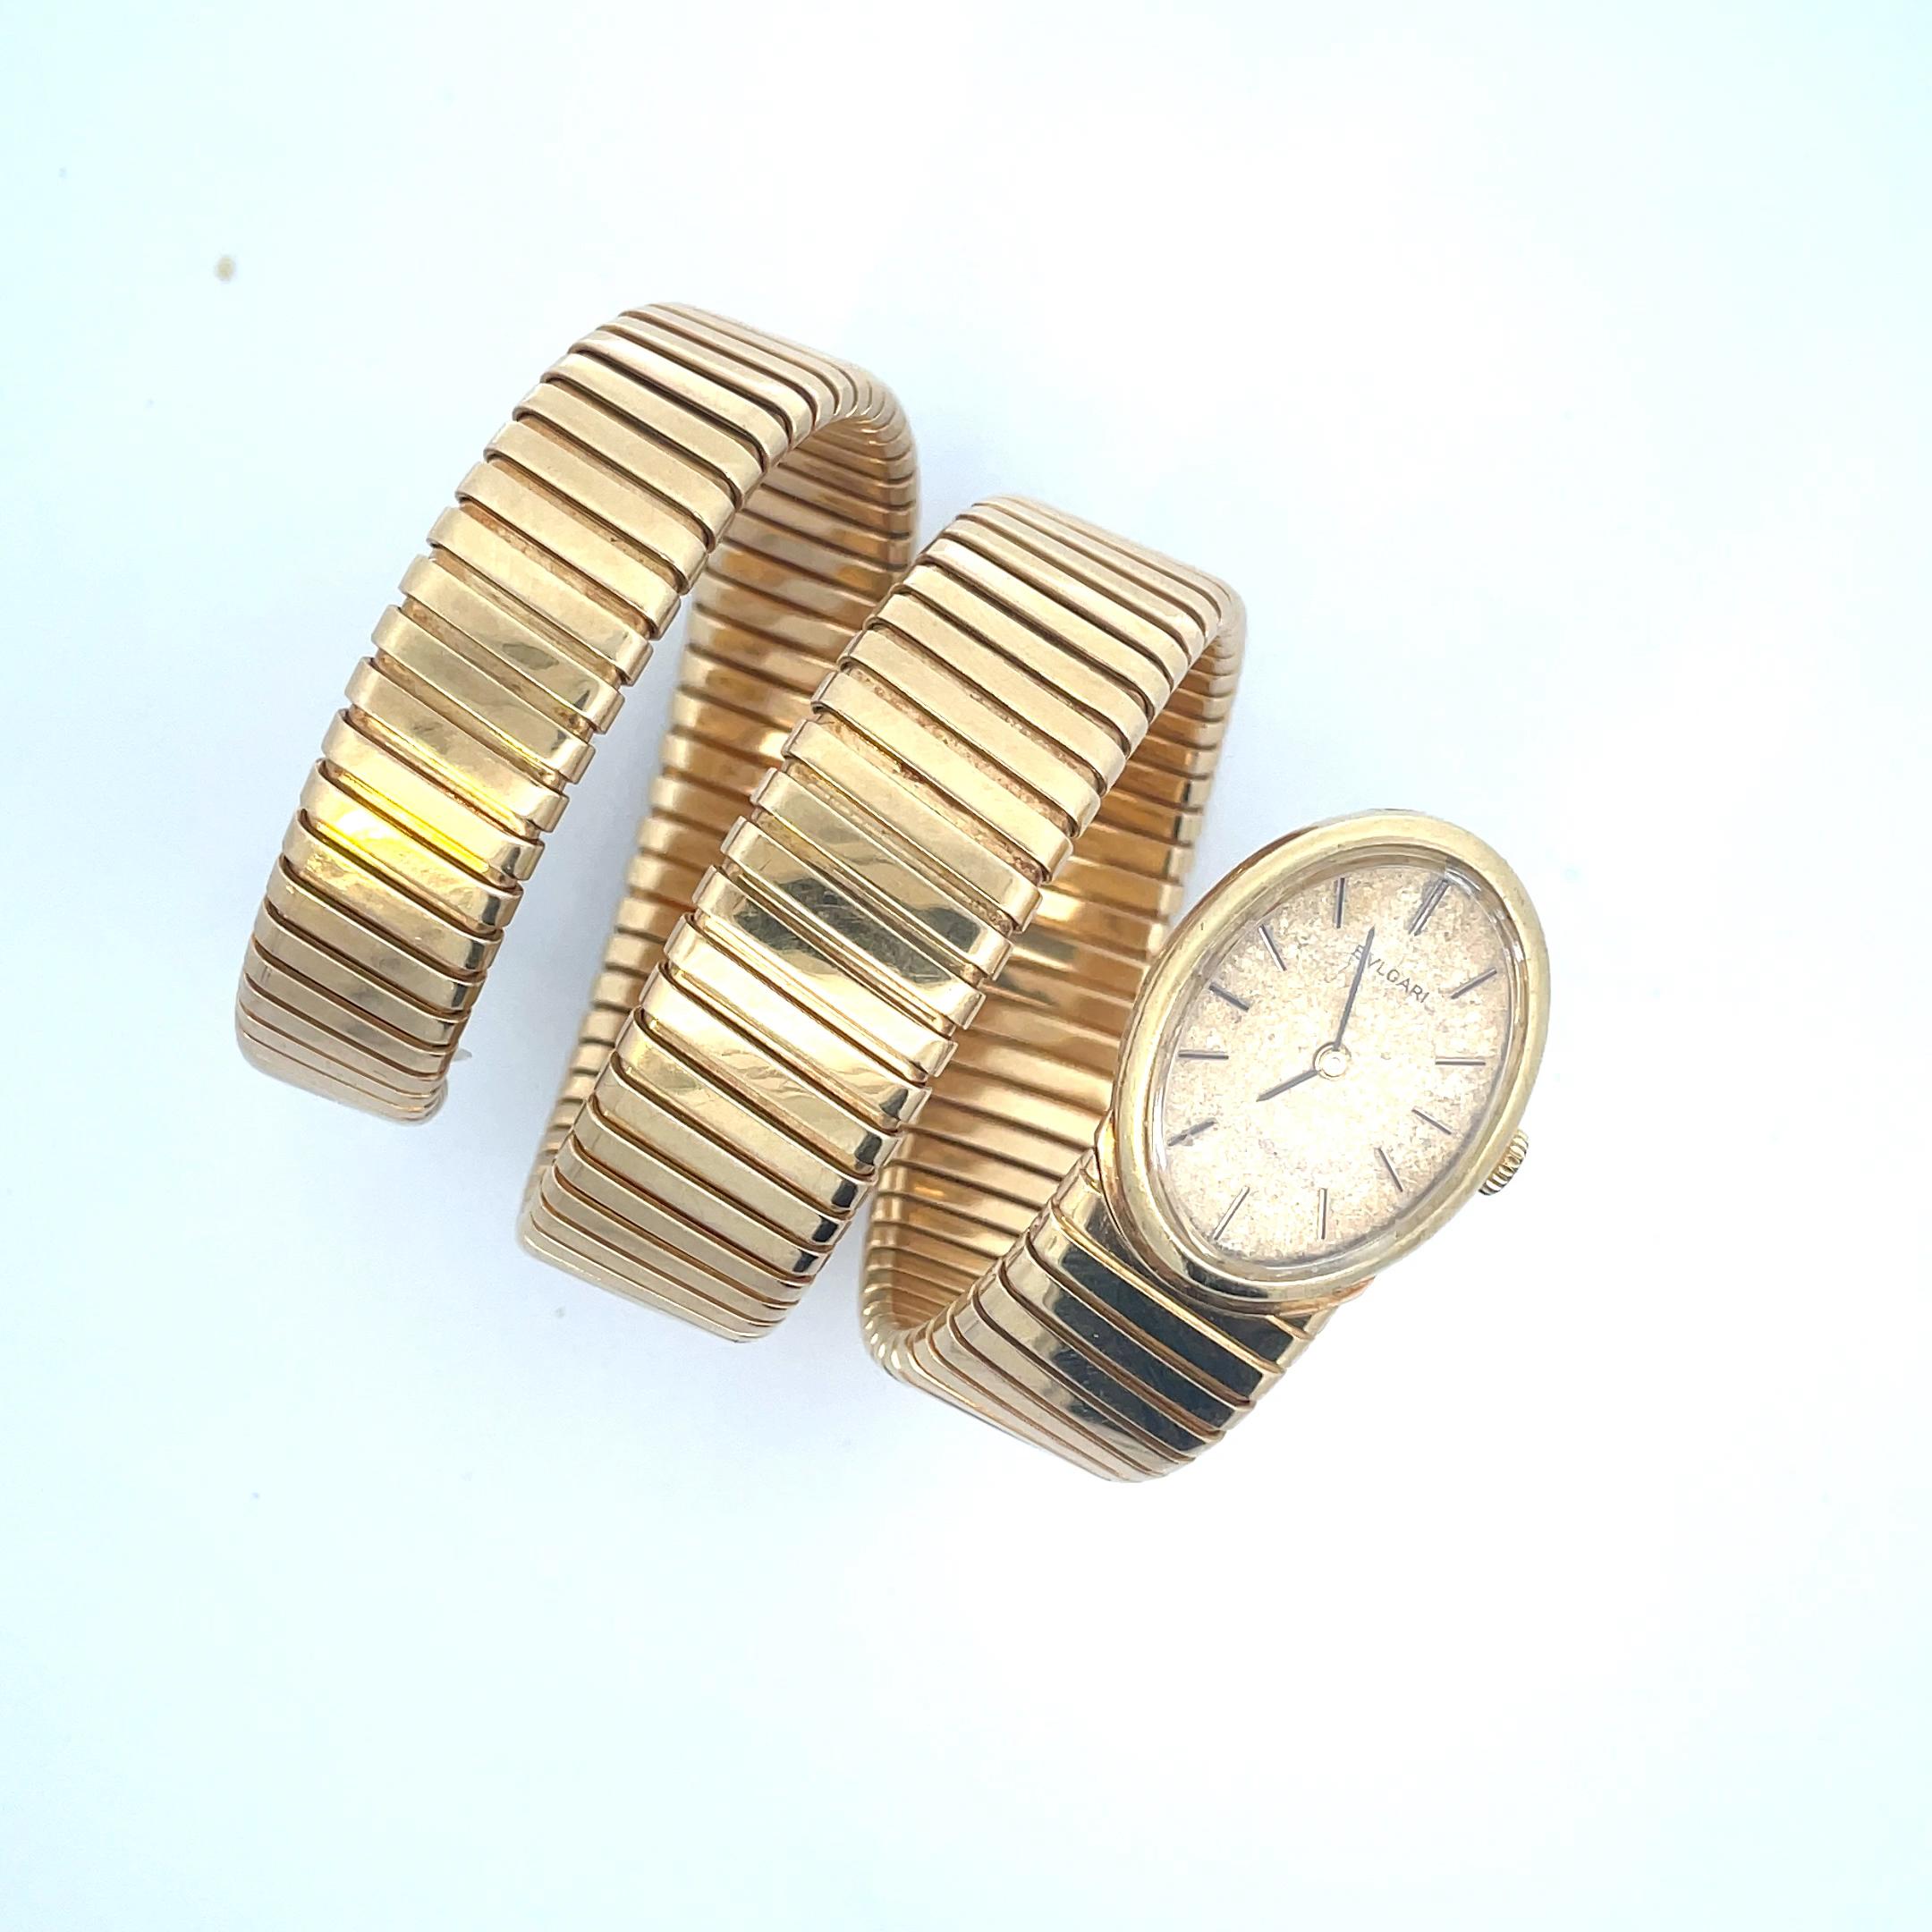 Une rare et belle montre Vintage Tubogas de Bulgari, en or jaune 18 carats, circa 1966.
La montre en or est dotée d'un boîtier ovale et d'un cadran mat GoldAged-Champagne. Le cadran est équipé d'aiguilles en or.
Le mouvement est un Juvenia à